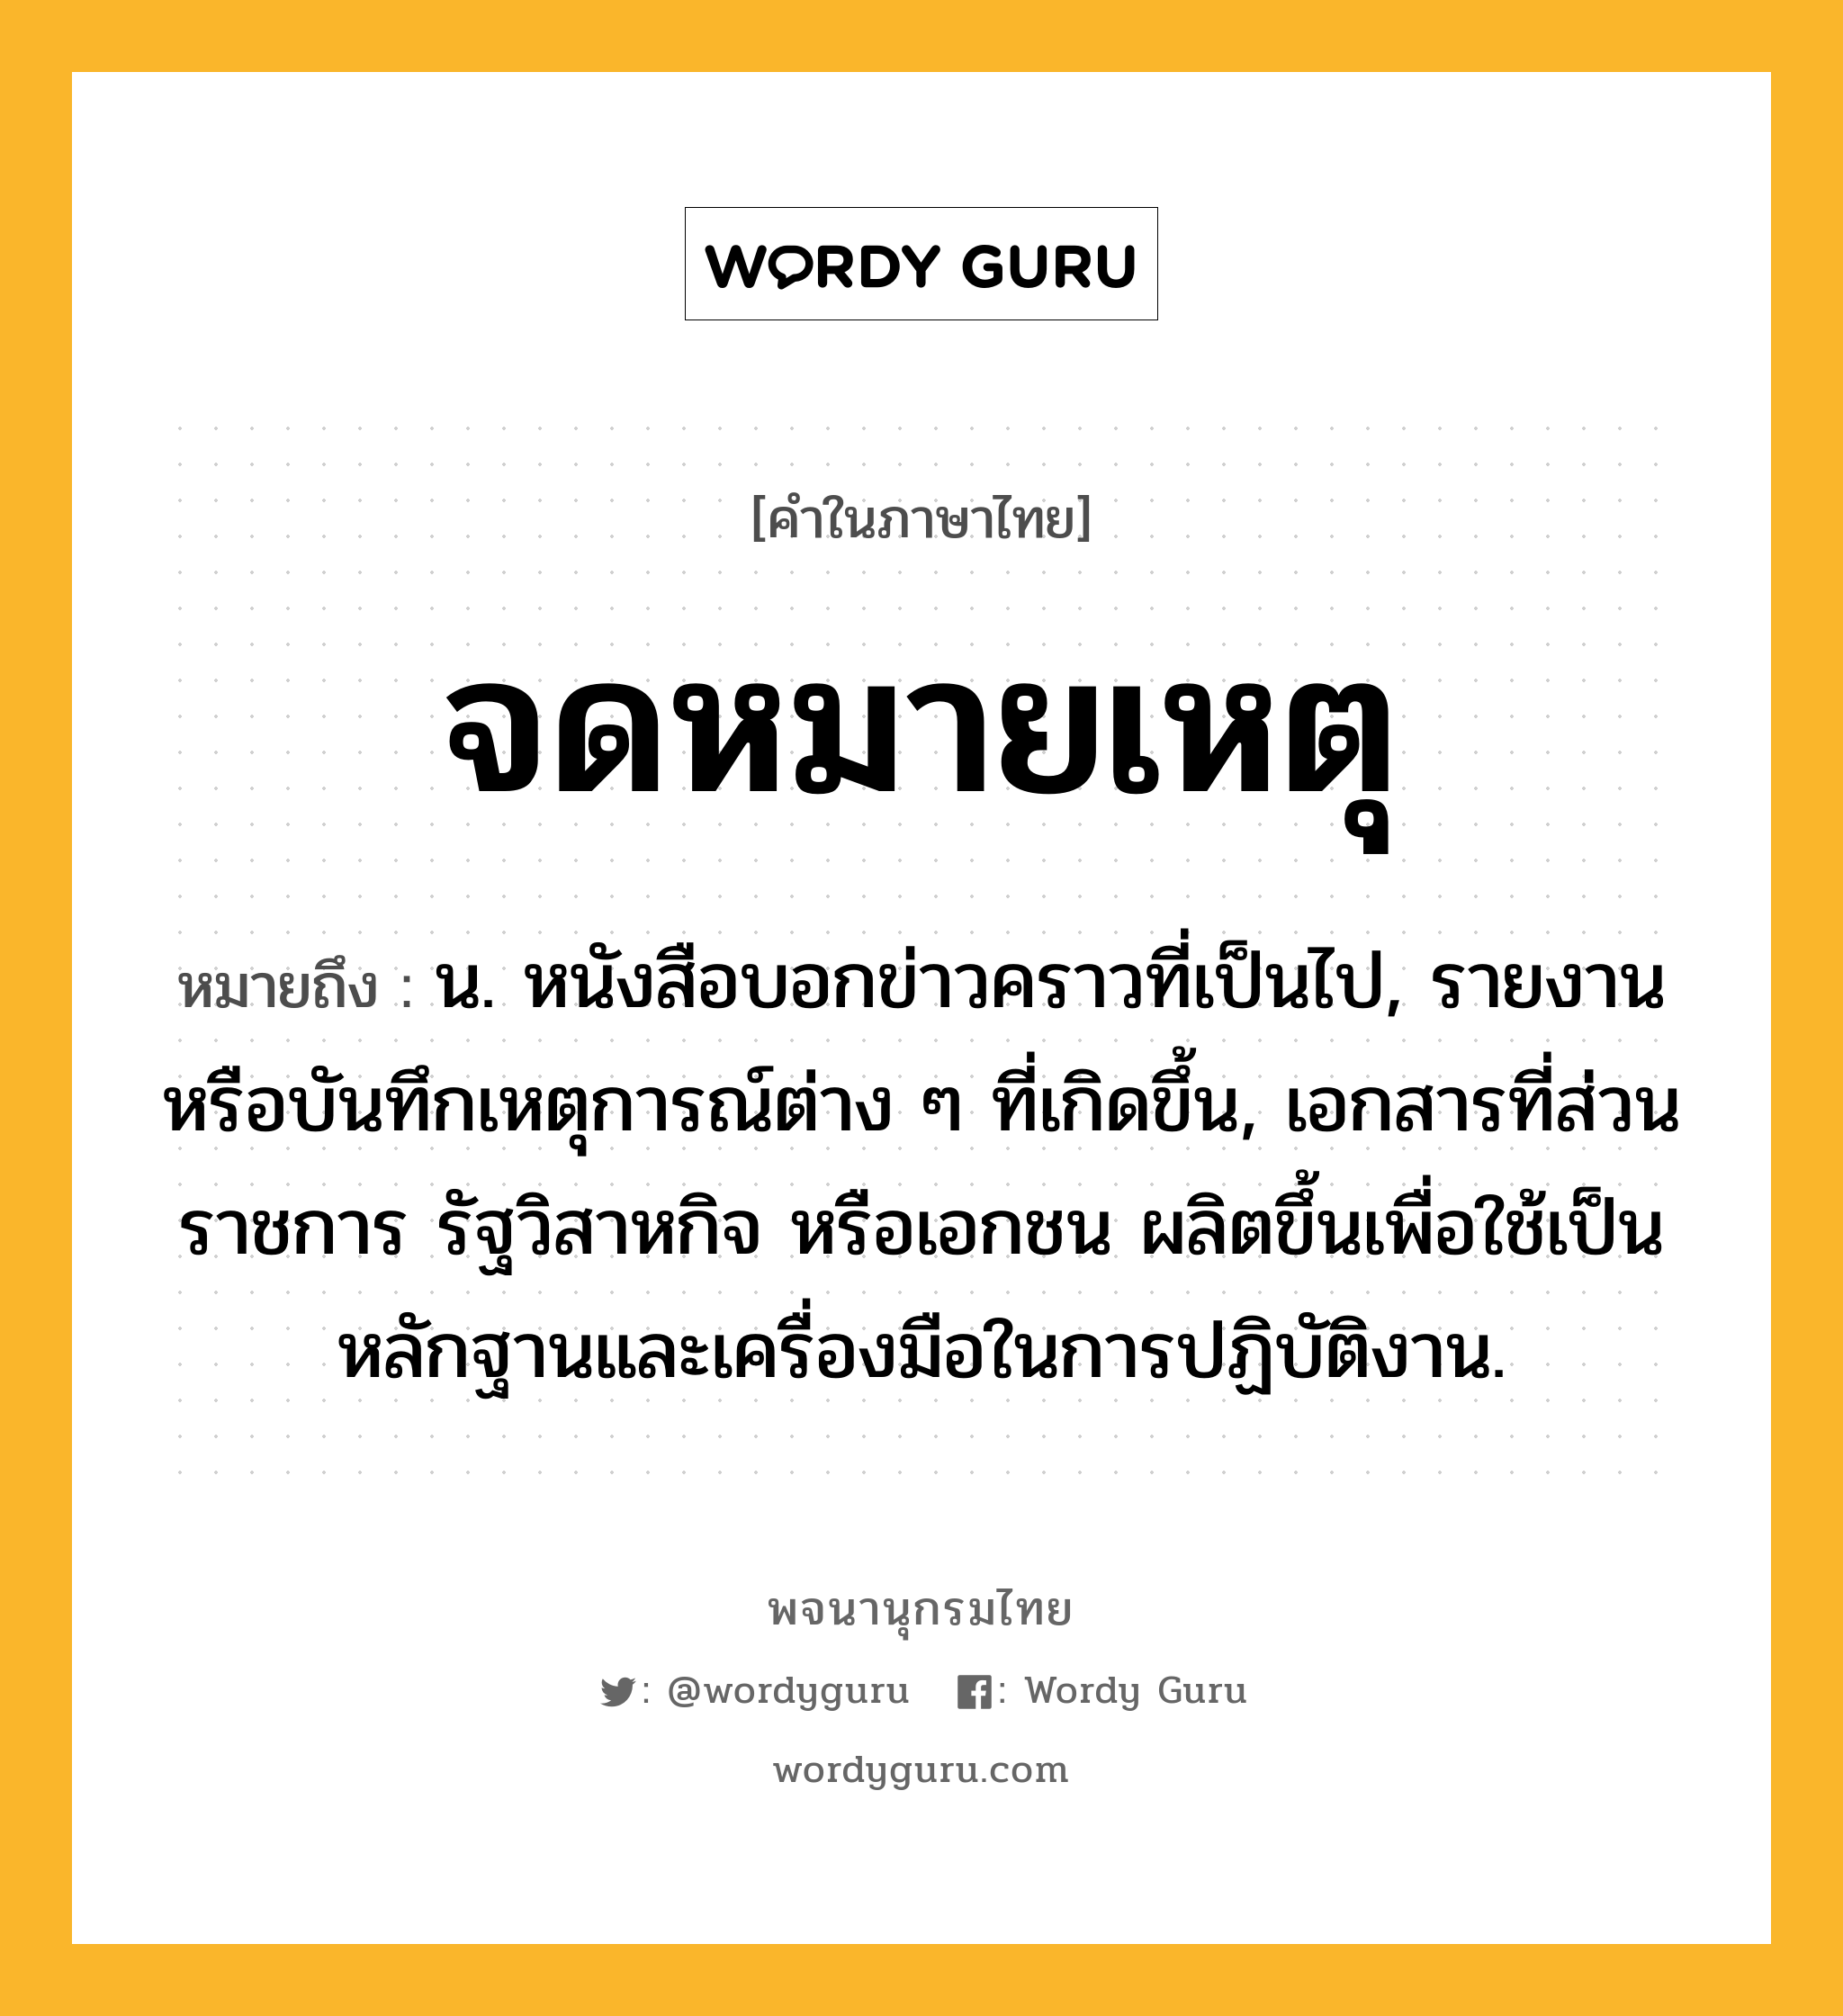 จดหมายเหตุ ความหมาย หมายถึงอะไร?, คำในภาษาไทย จดหมายเหตุ หมายถึง น. หนังสือบอกข่าวคราวที่เป็นไป, รายงานหรือบันทึกเหตุการณ์ต่าง ๆ ที่เกิดขึ้น, เอกสารที่ส่วนราชการ รัฐวิสาหกิจ หรือเอกชน ผลิตขึ้นเพื่อใช้เป็นหลักฐานและเครื่องมือในการปฏิบัติงาน.